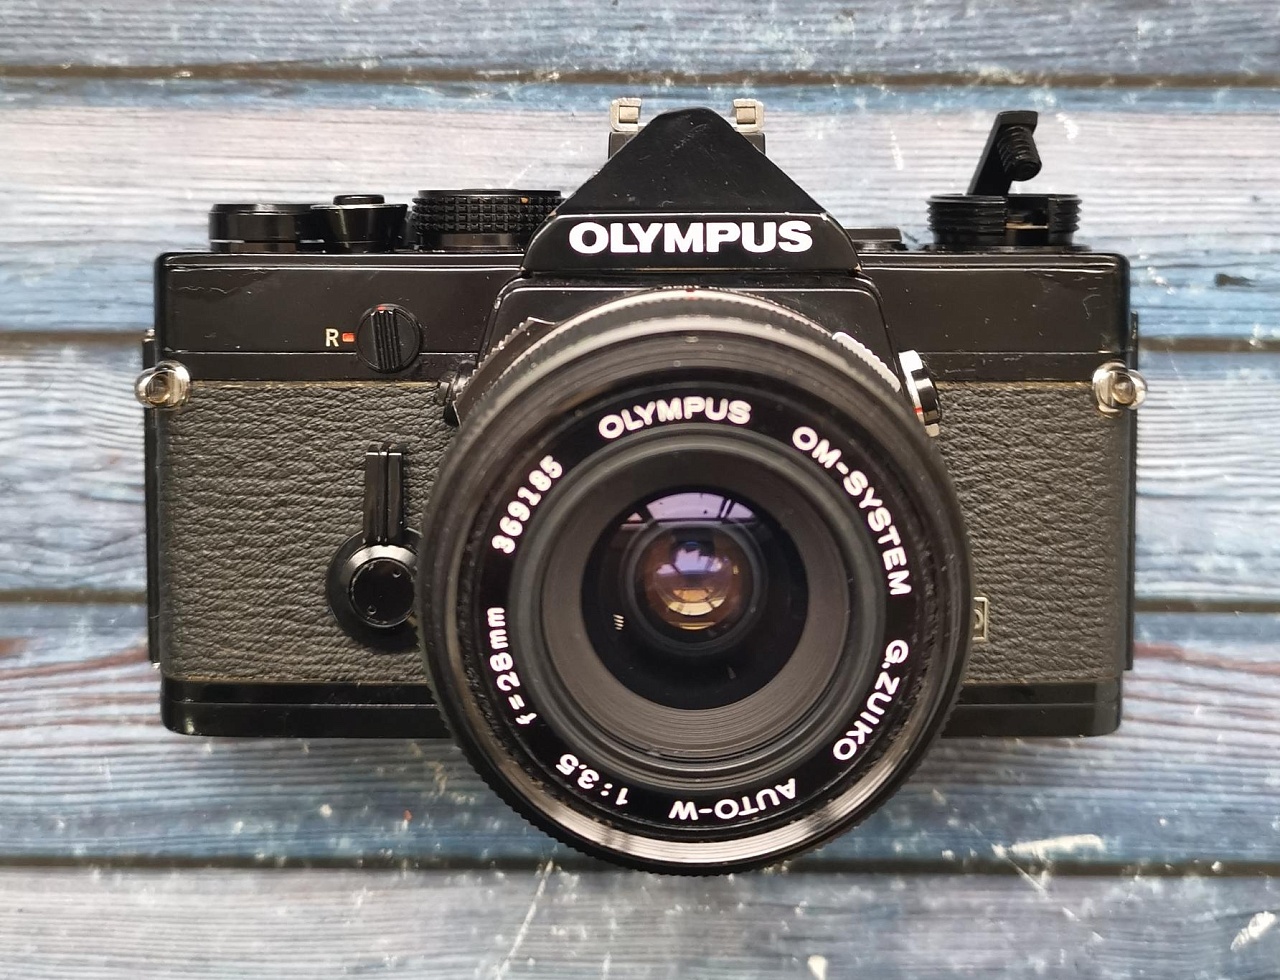 Olympus OM-1 + Olympus OM-System g. Zuiko Auto-w 28 mm f/3.5 фото №1